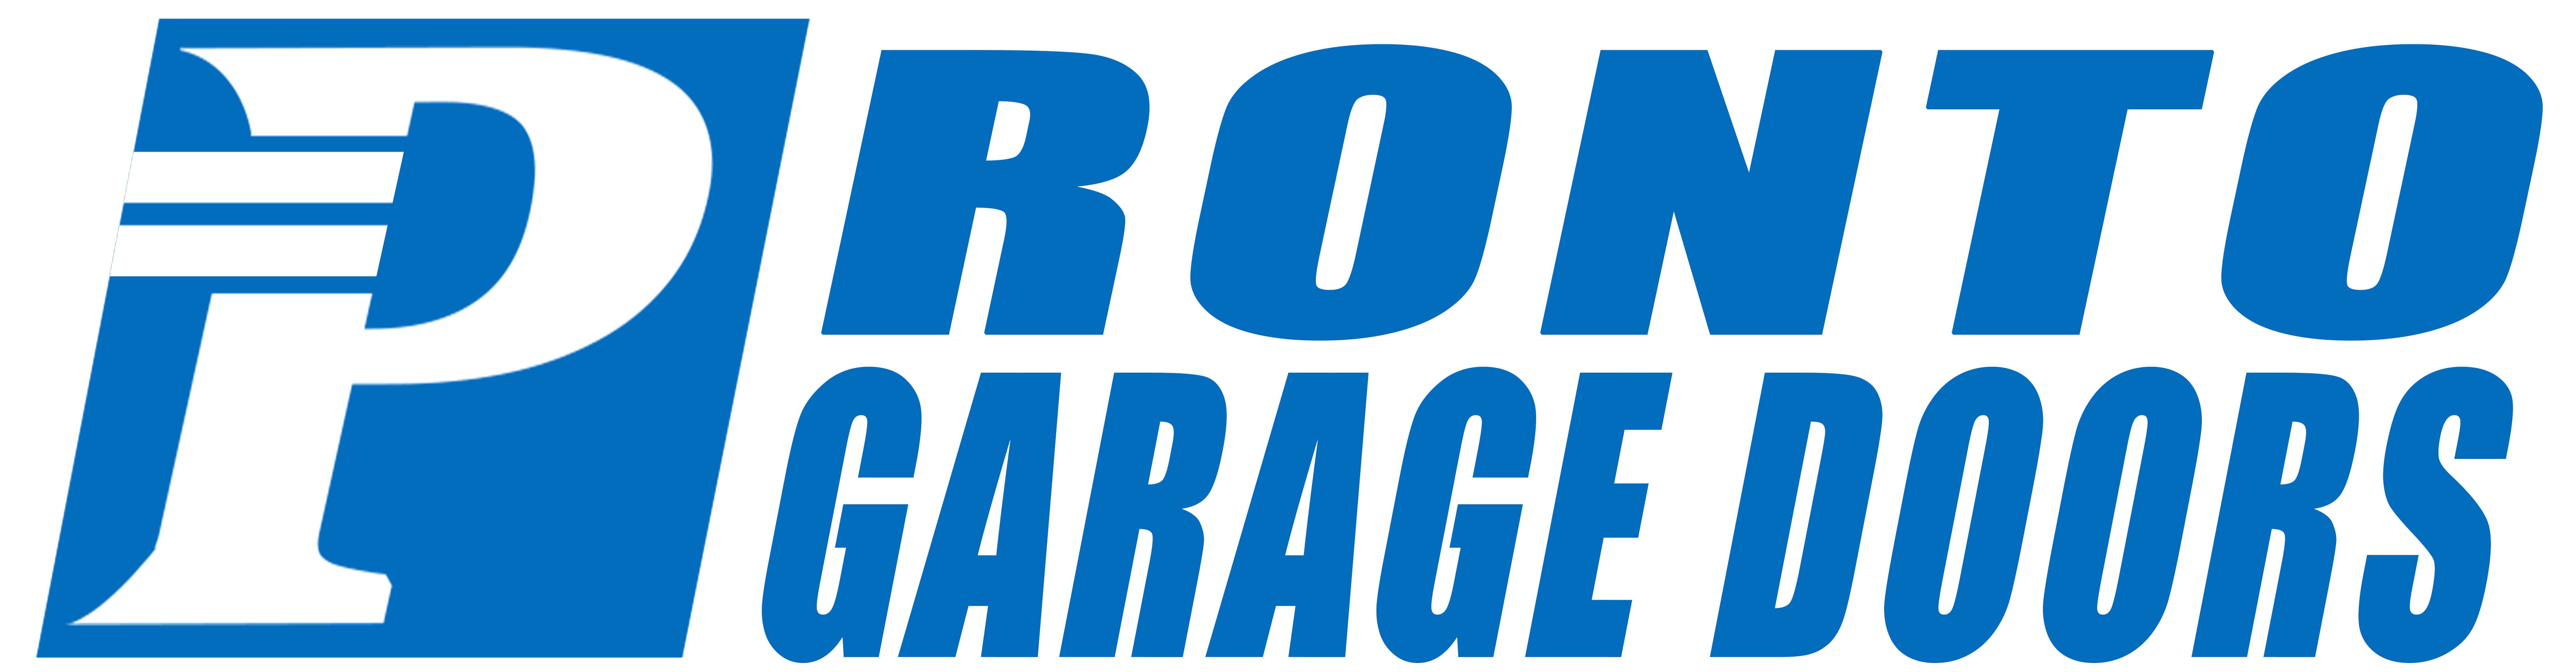 Pronto Garage Doors LLC